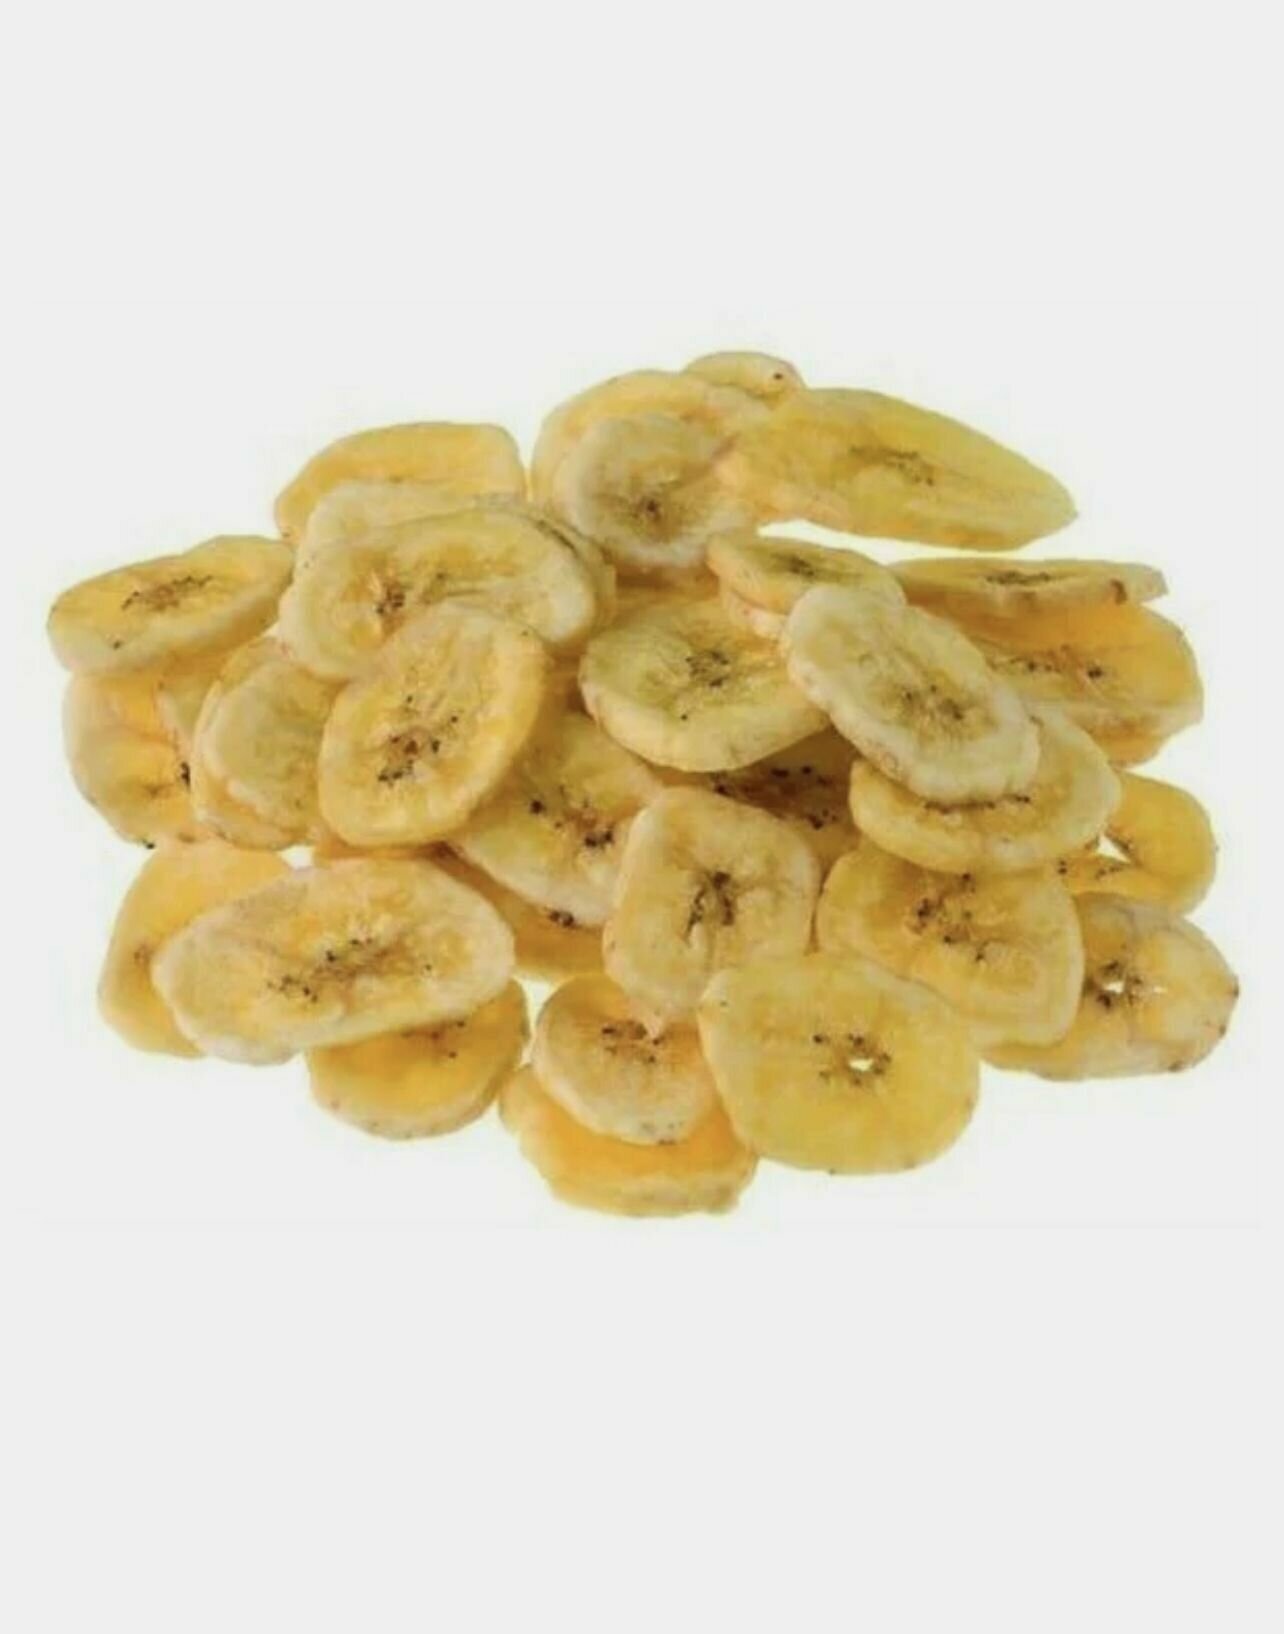 Бананы сушеные (чипсы) F&Z Nuts 1000гр